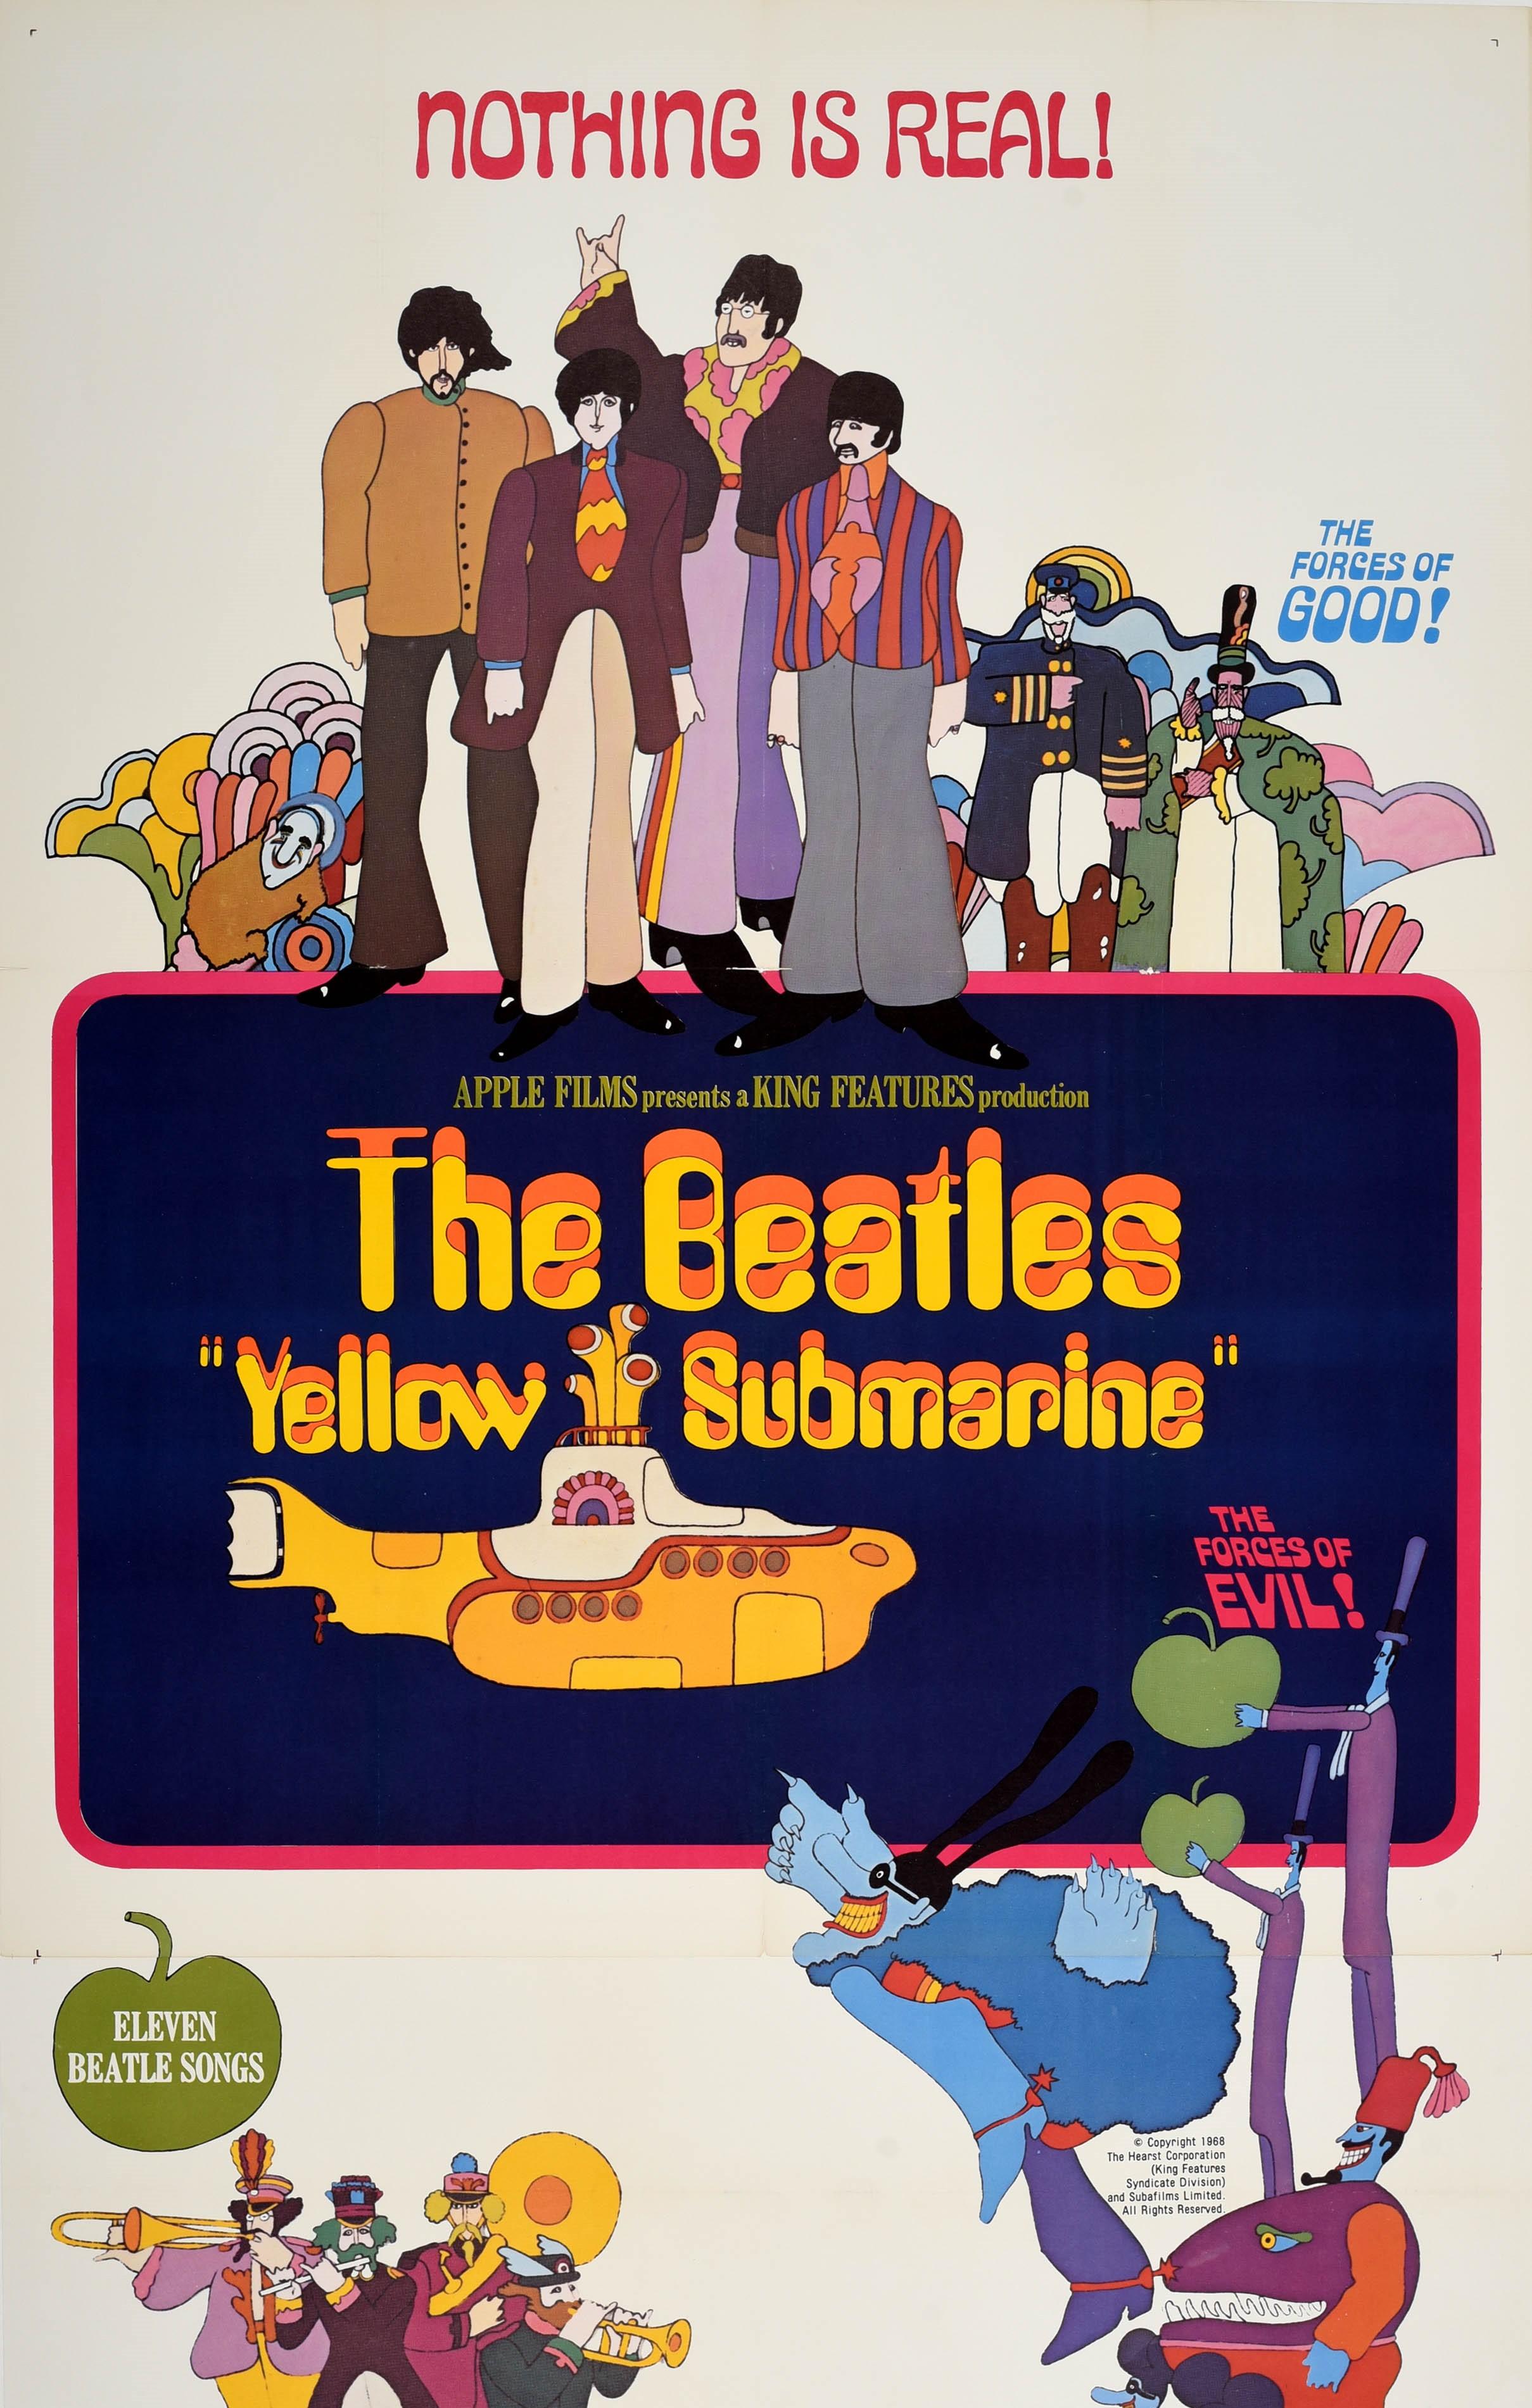 Original Vintage Filmplakat für den 1968 animierten Musikfilm Yellow Submarine mit der Sgt. Pepper's Lonely Hearts Club Band, basierend auf einem Song von John Lennon und Paul McCartney, zeigt ein Bild des kultigen gelben U-Boots mit psychedelischem